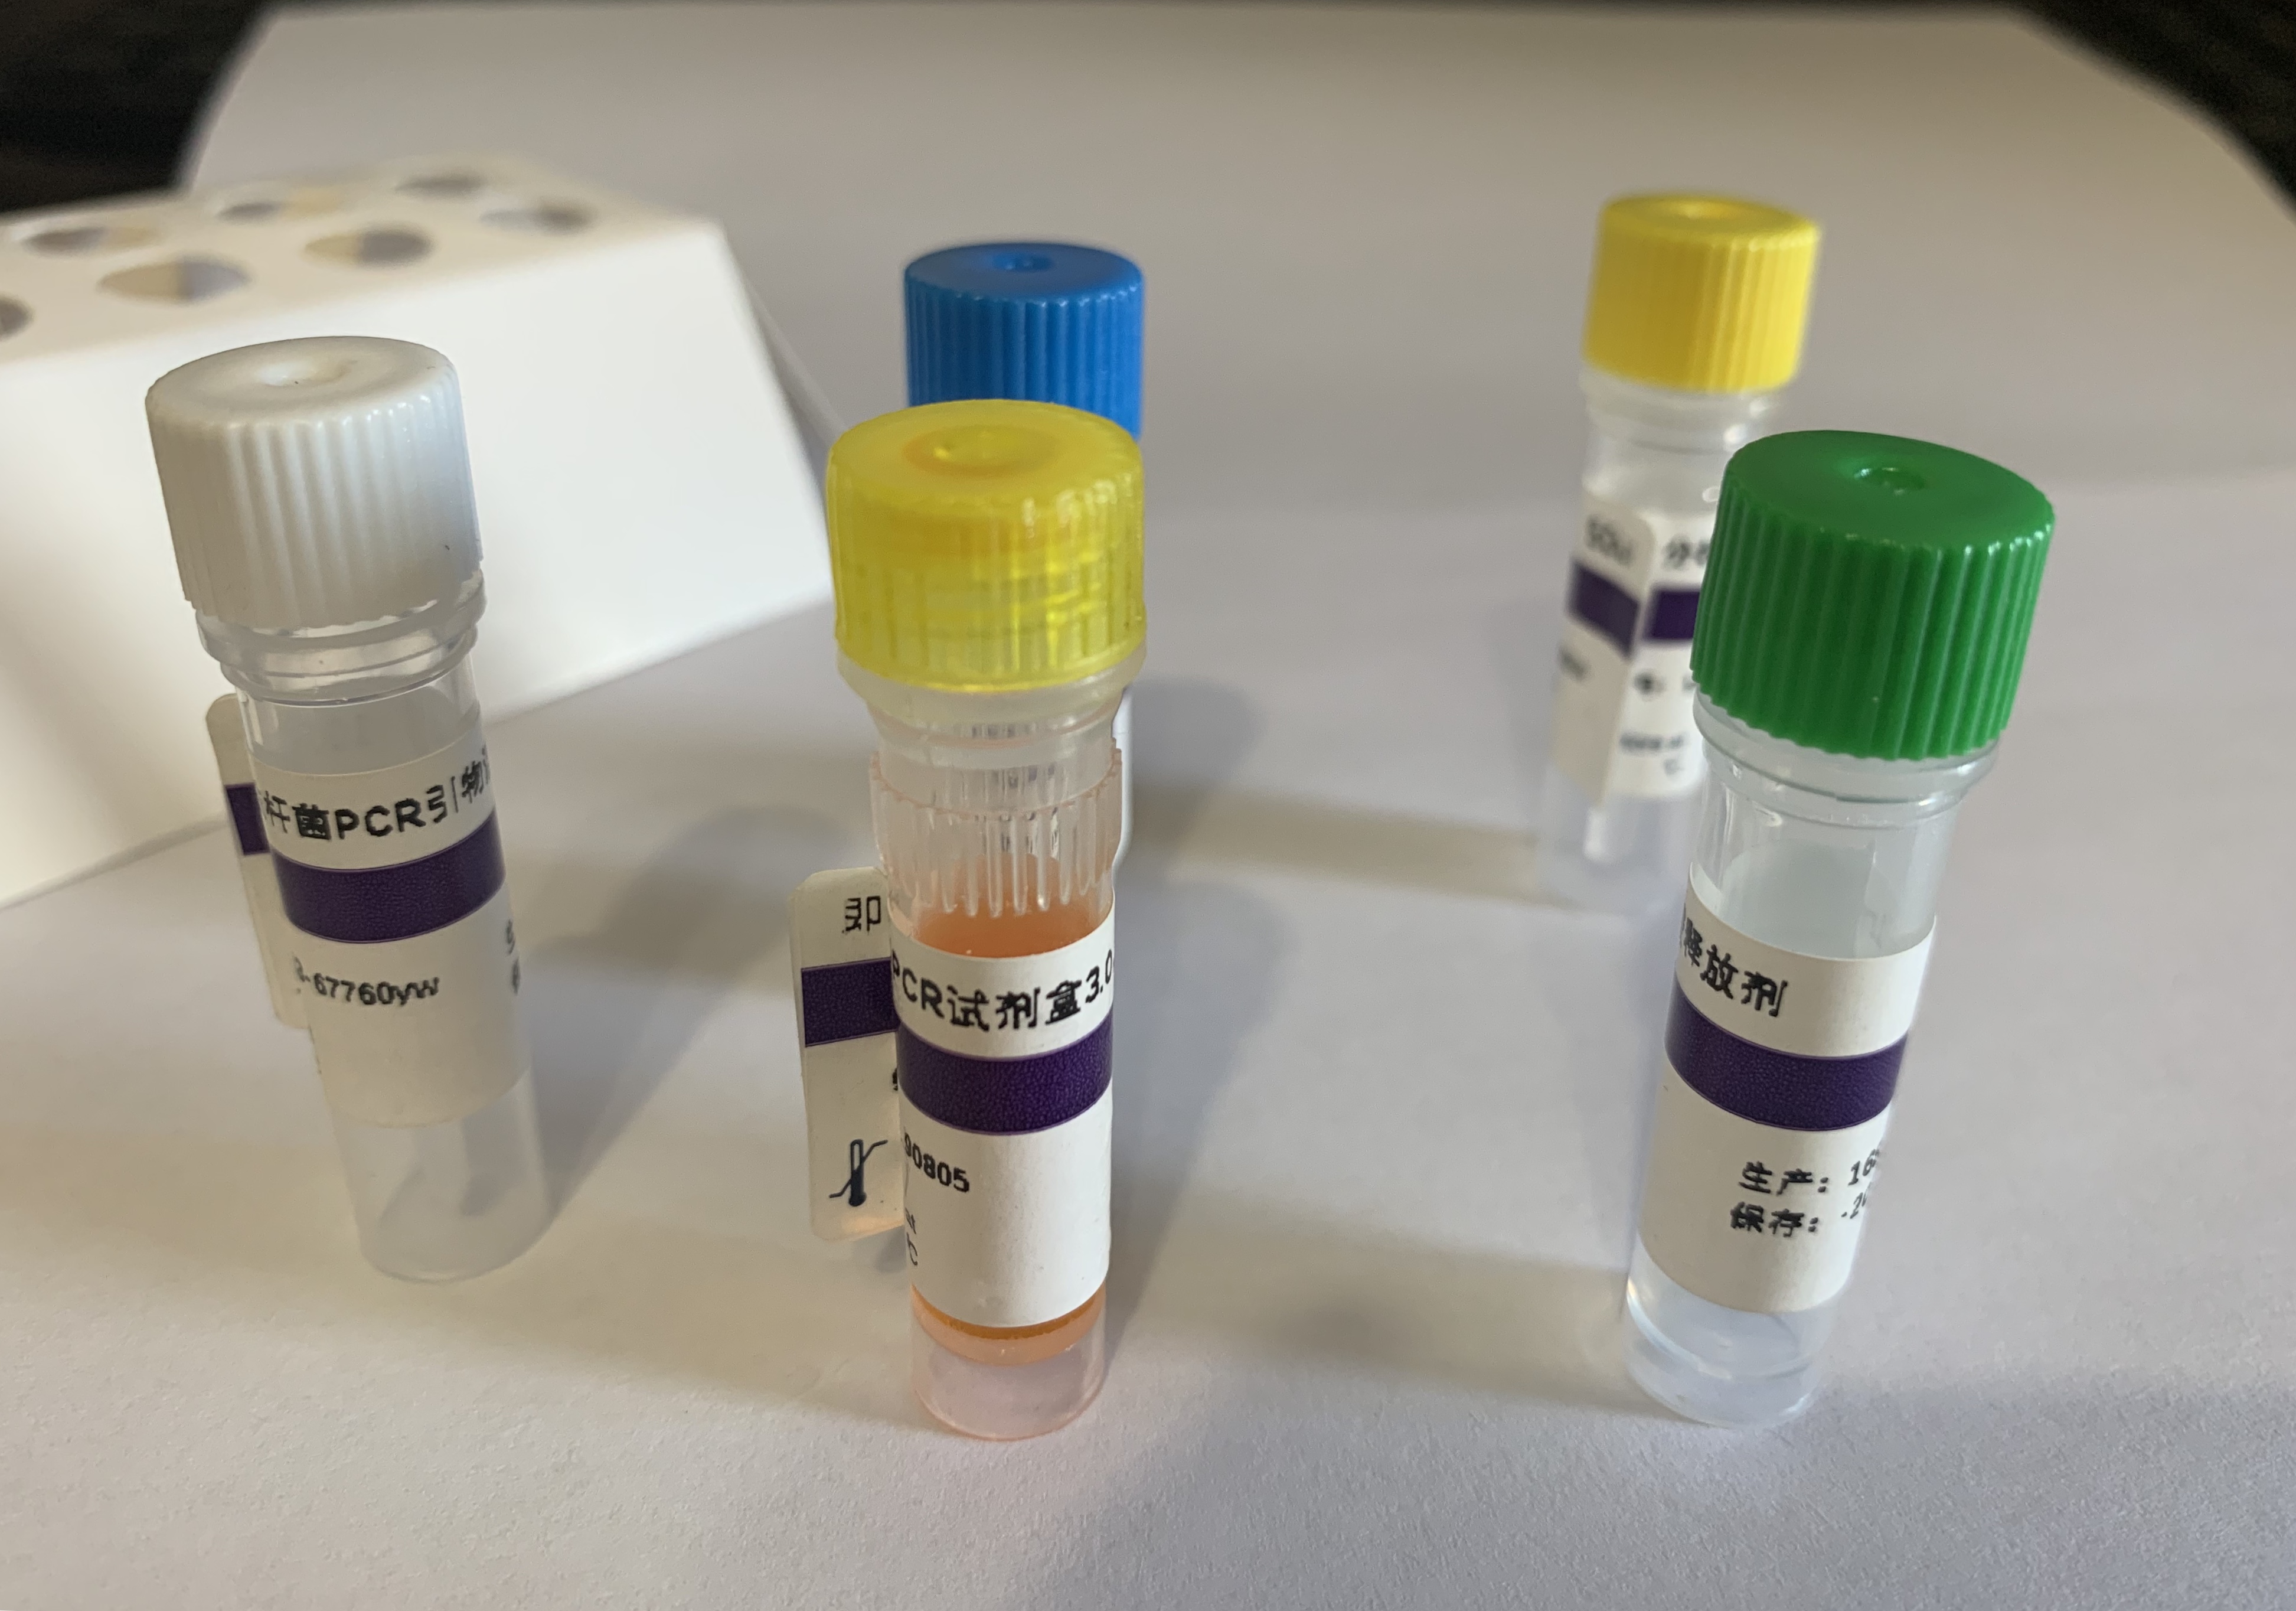 人肤蝇探针法荧光定量PCR试剂盒